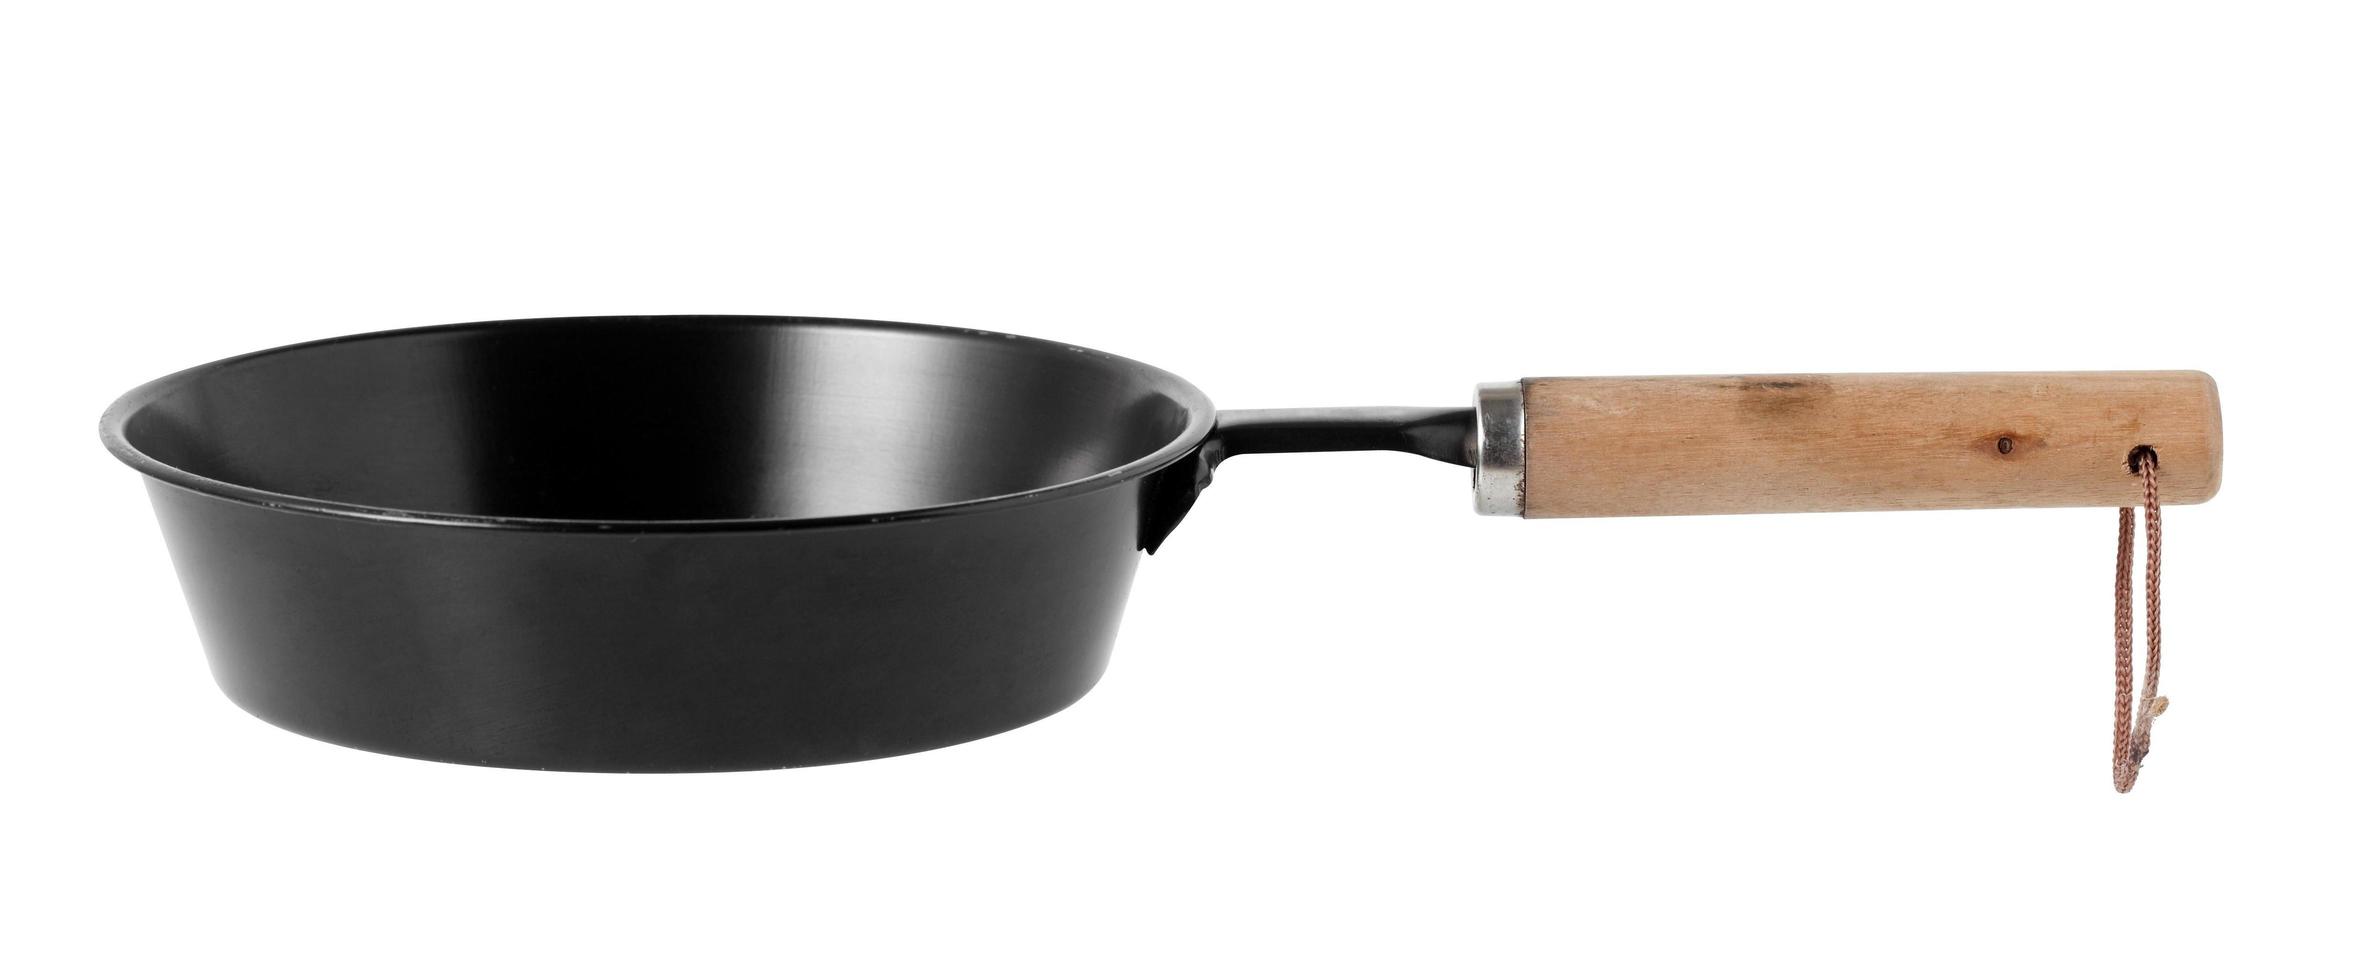 Iron black pan on white background photo